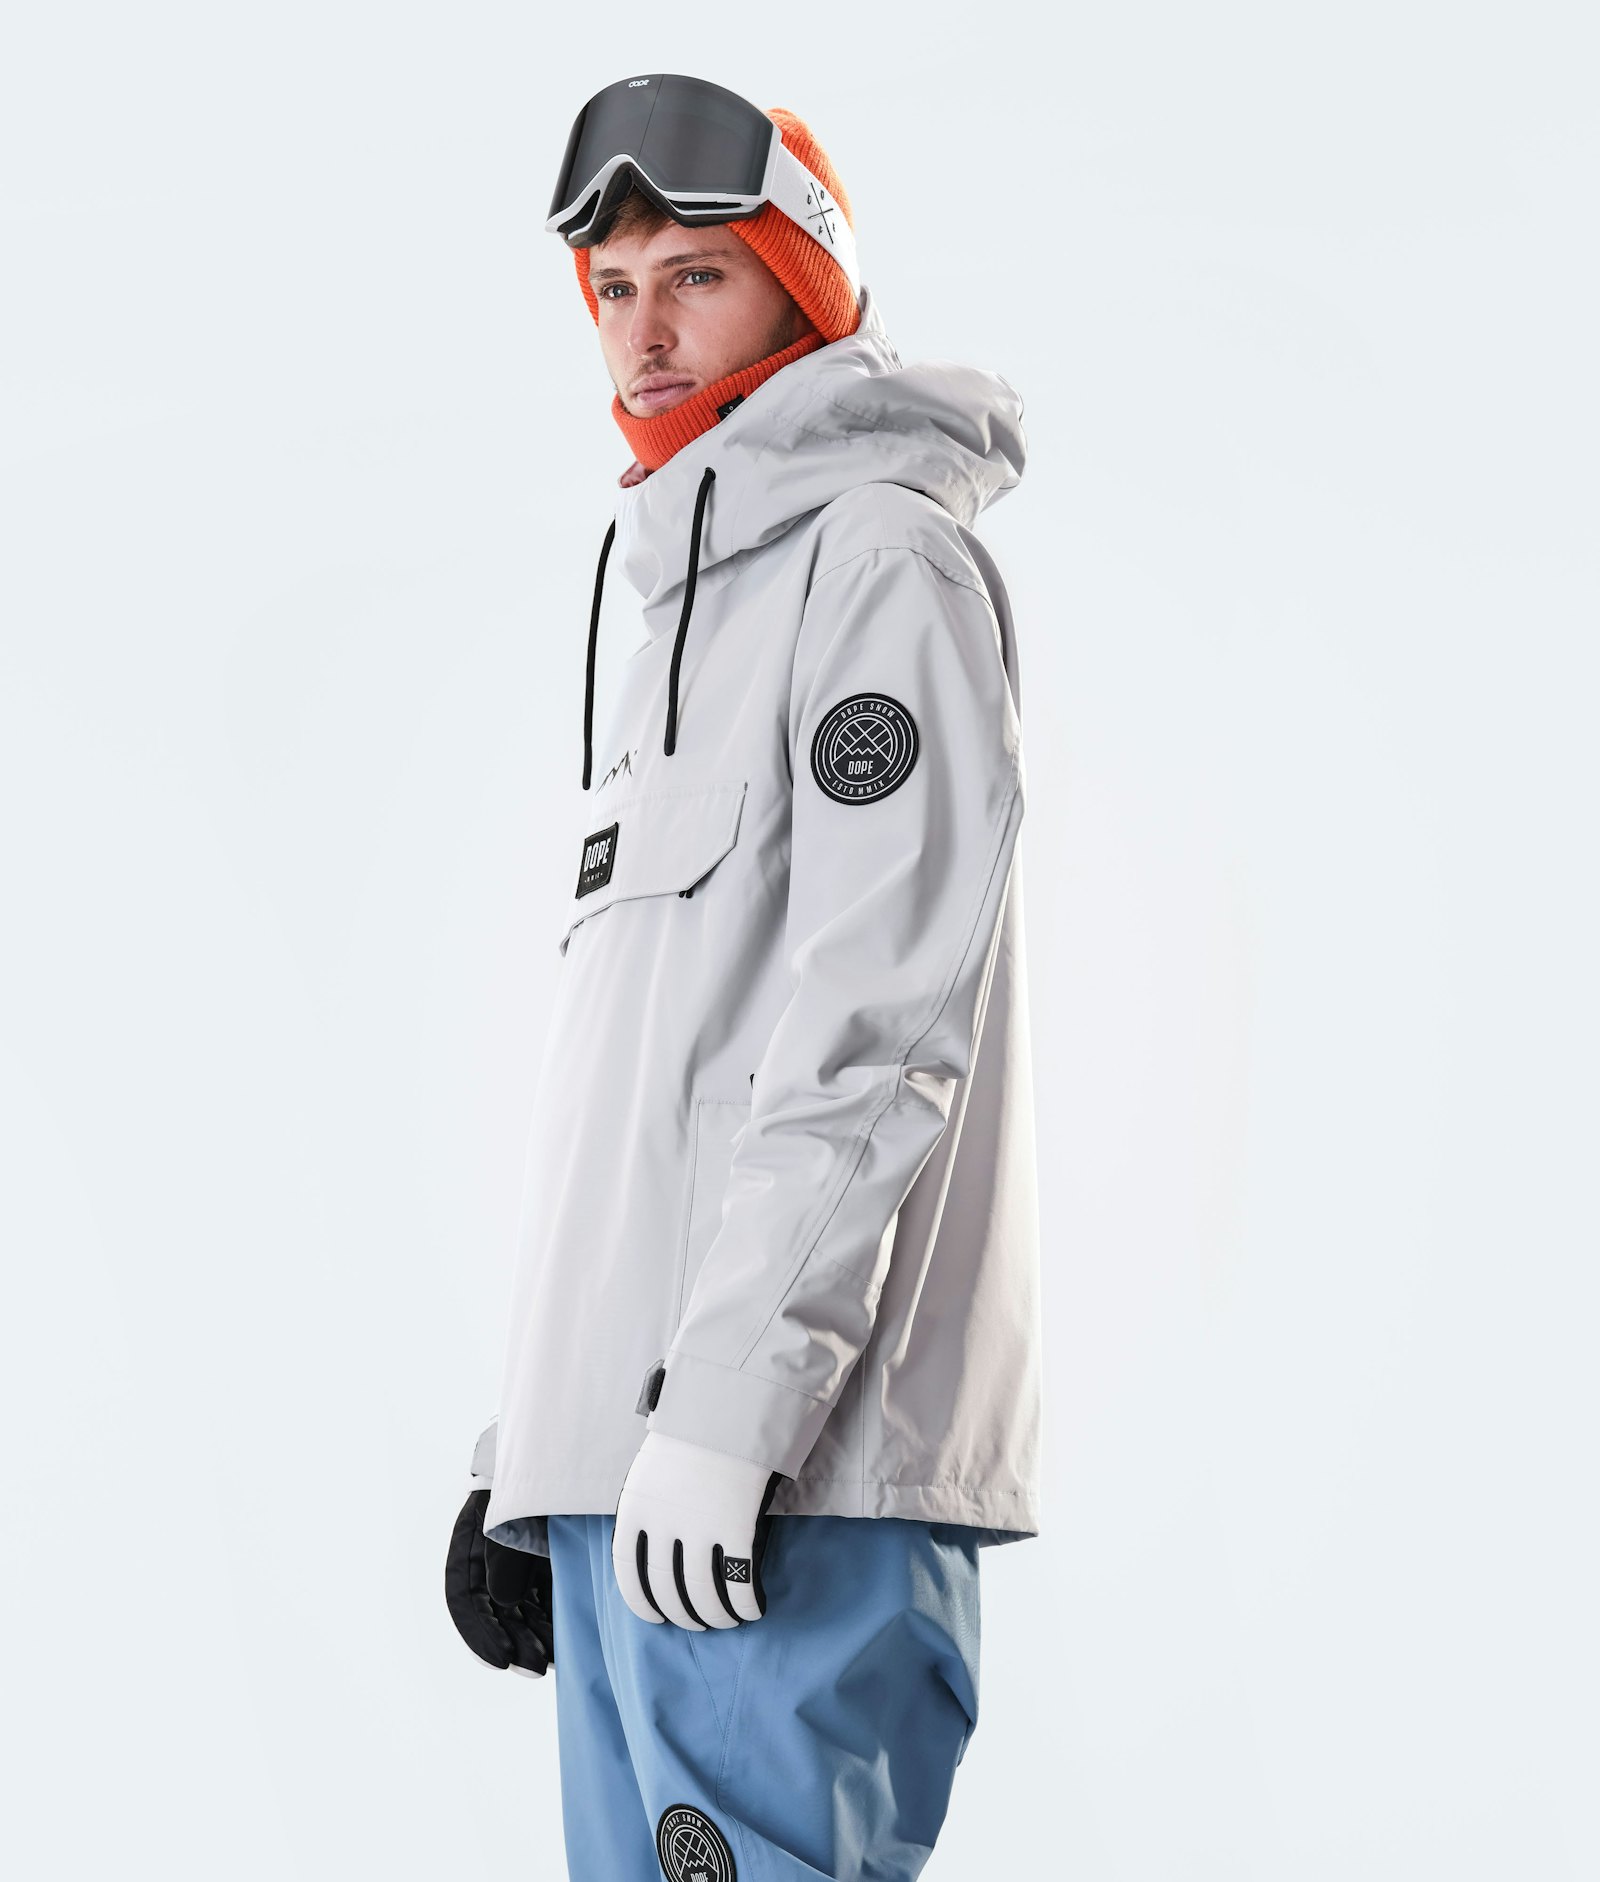 Blizzard 2020 Ski jas Heren Light Grey